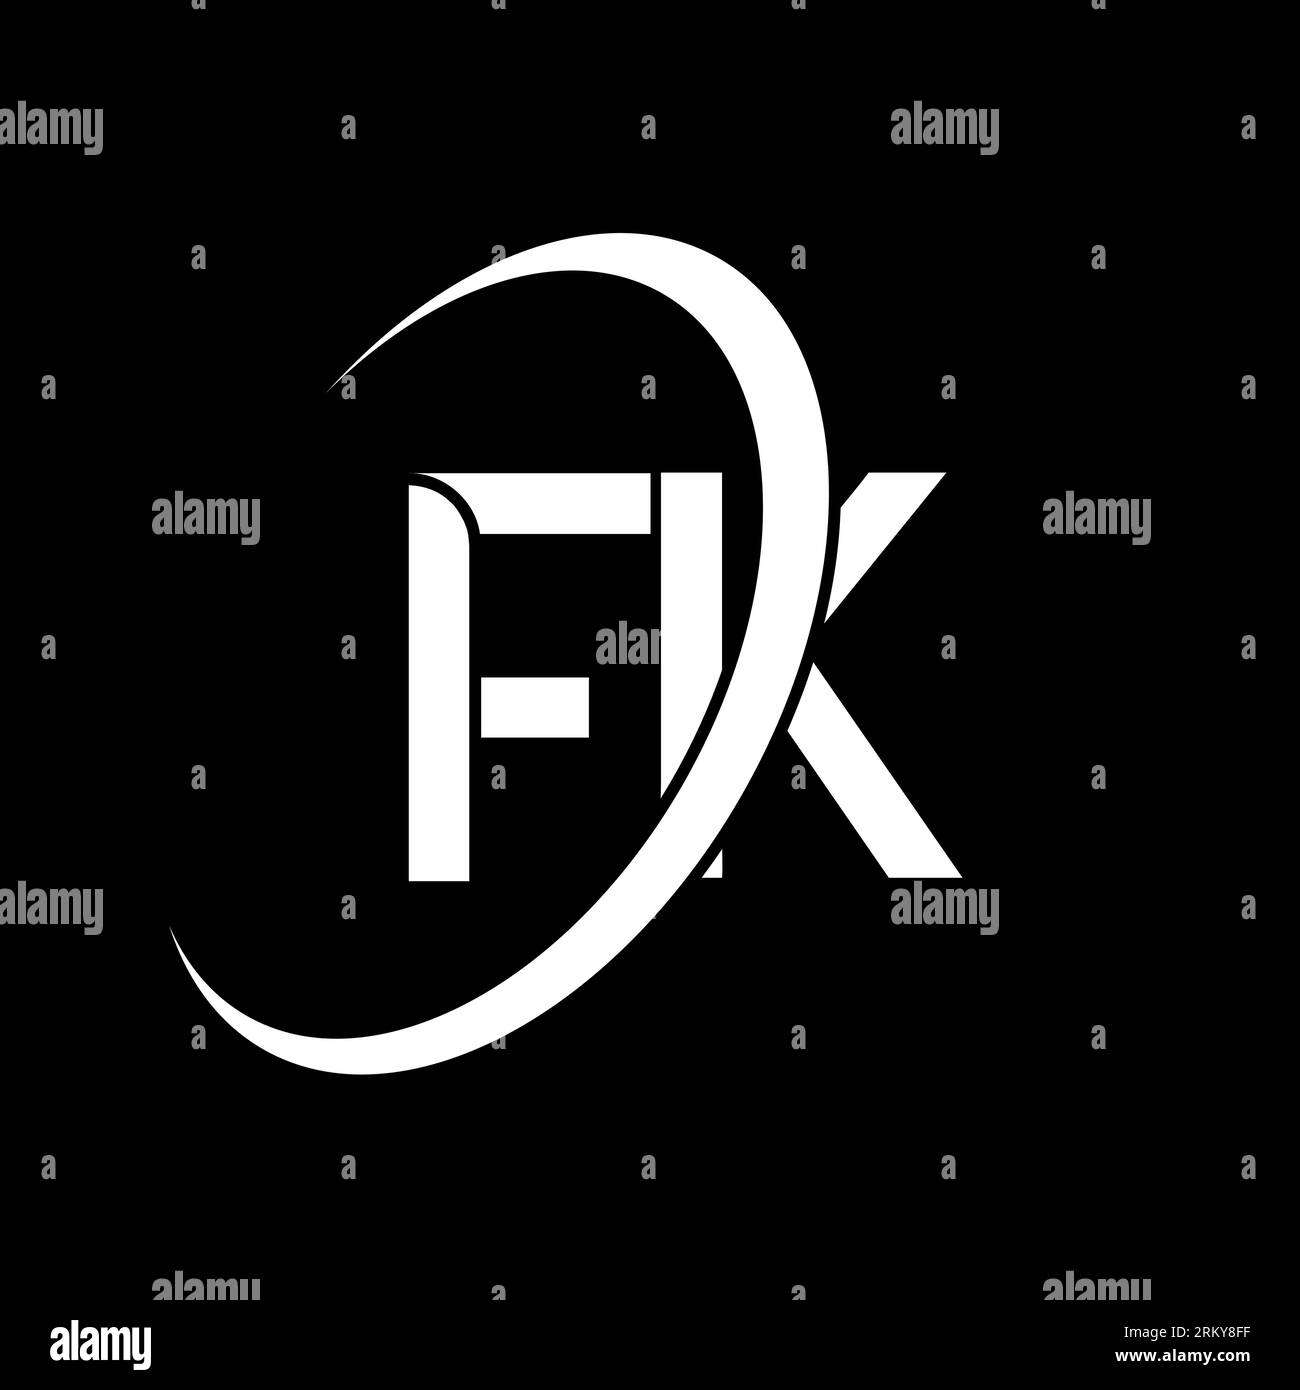 FK letter logo design Stock Vector